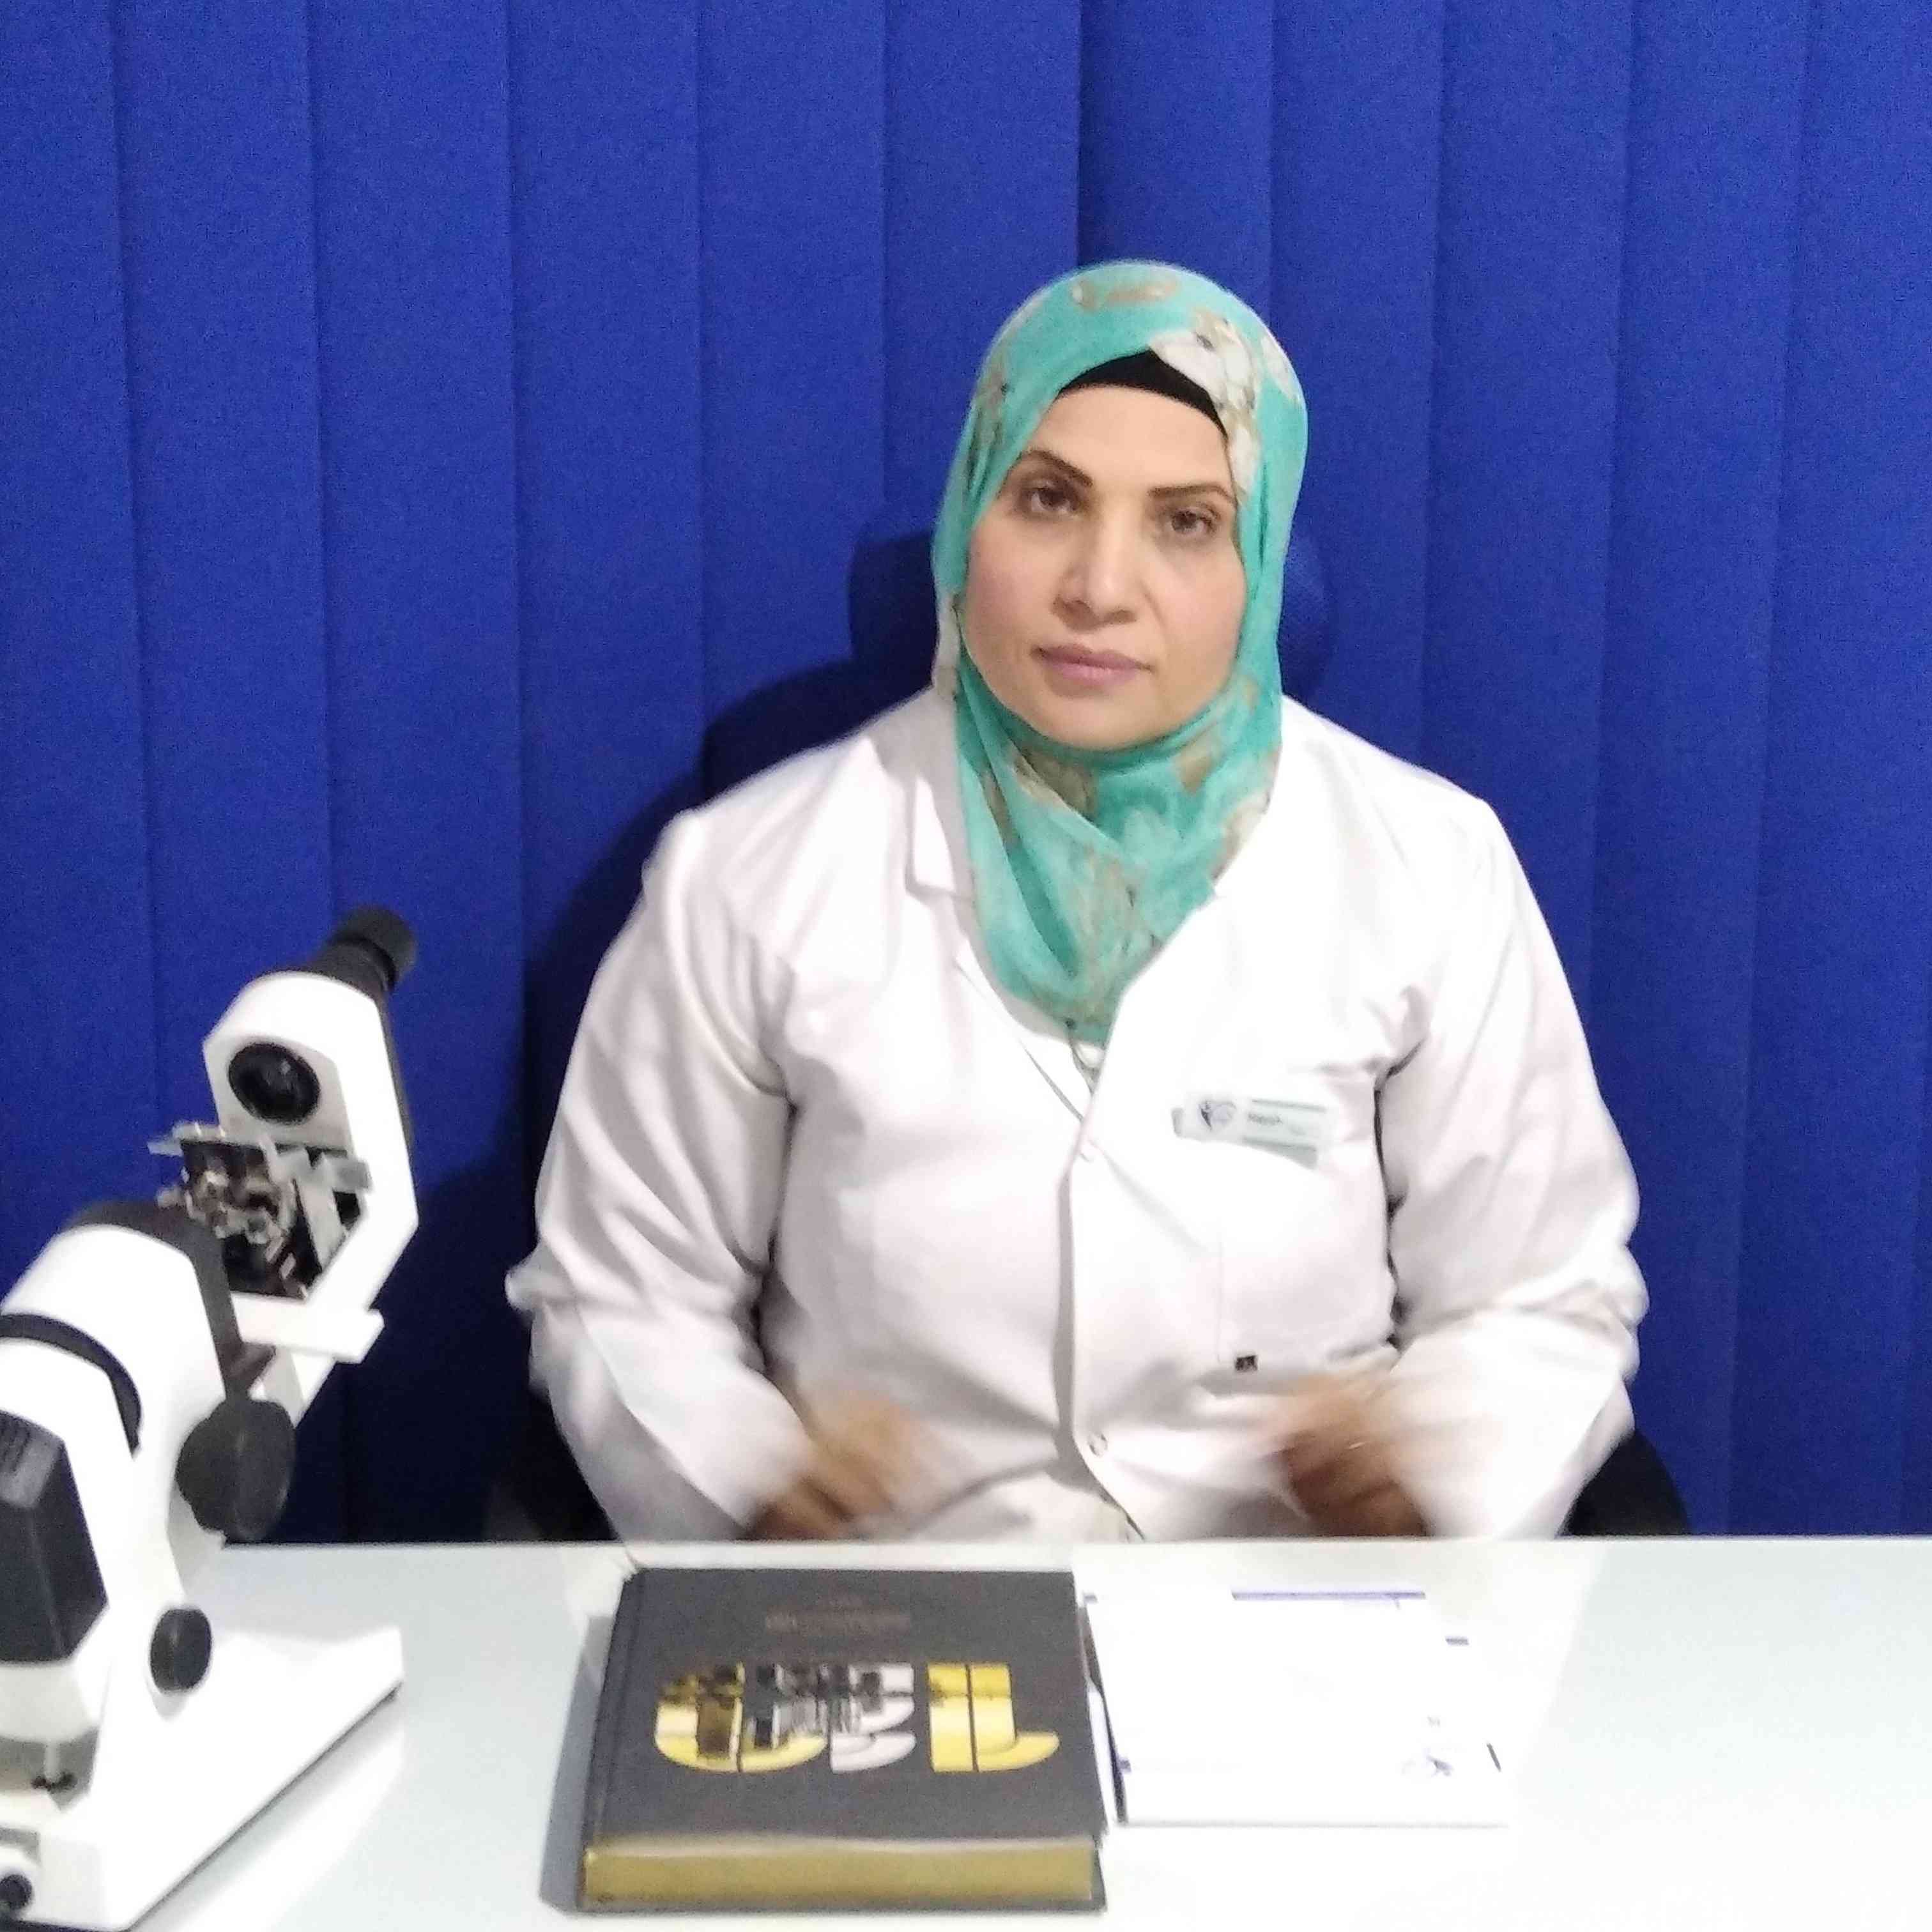 Dr. Laila Korany Mohamed